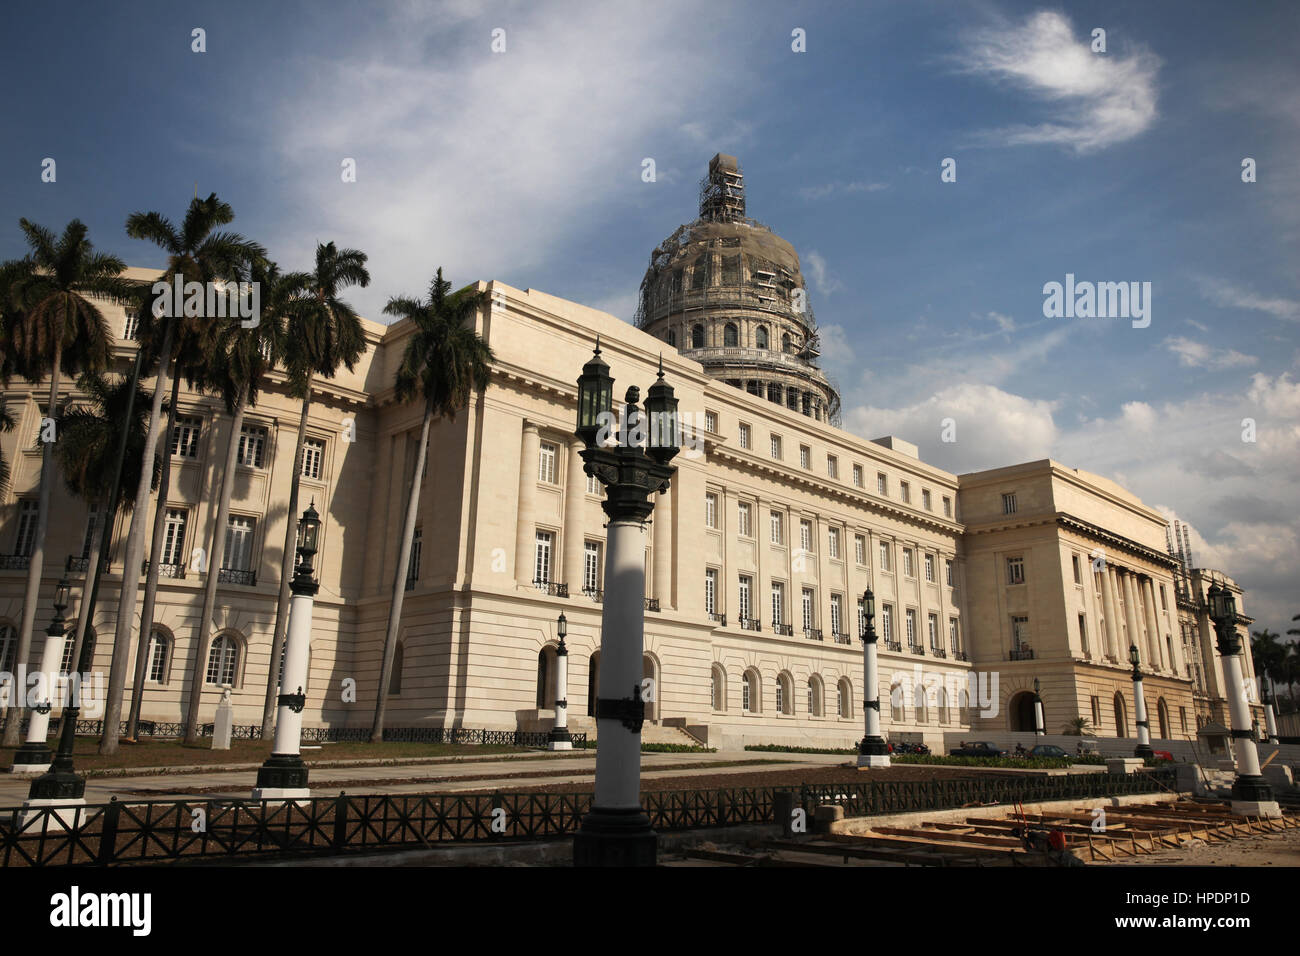 El Capitolio ou National Capitol Building à La Havane, Cuba. Banque D'Images